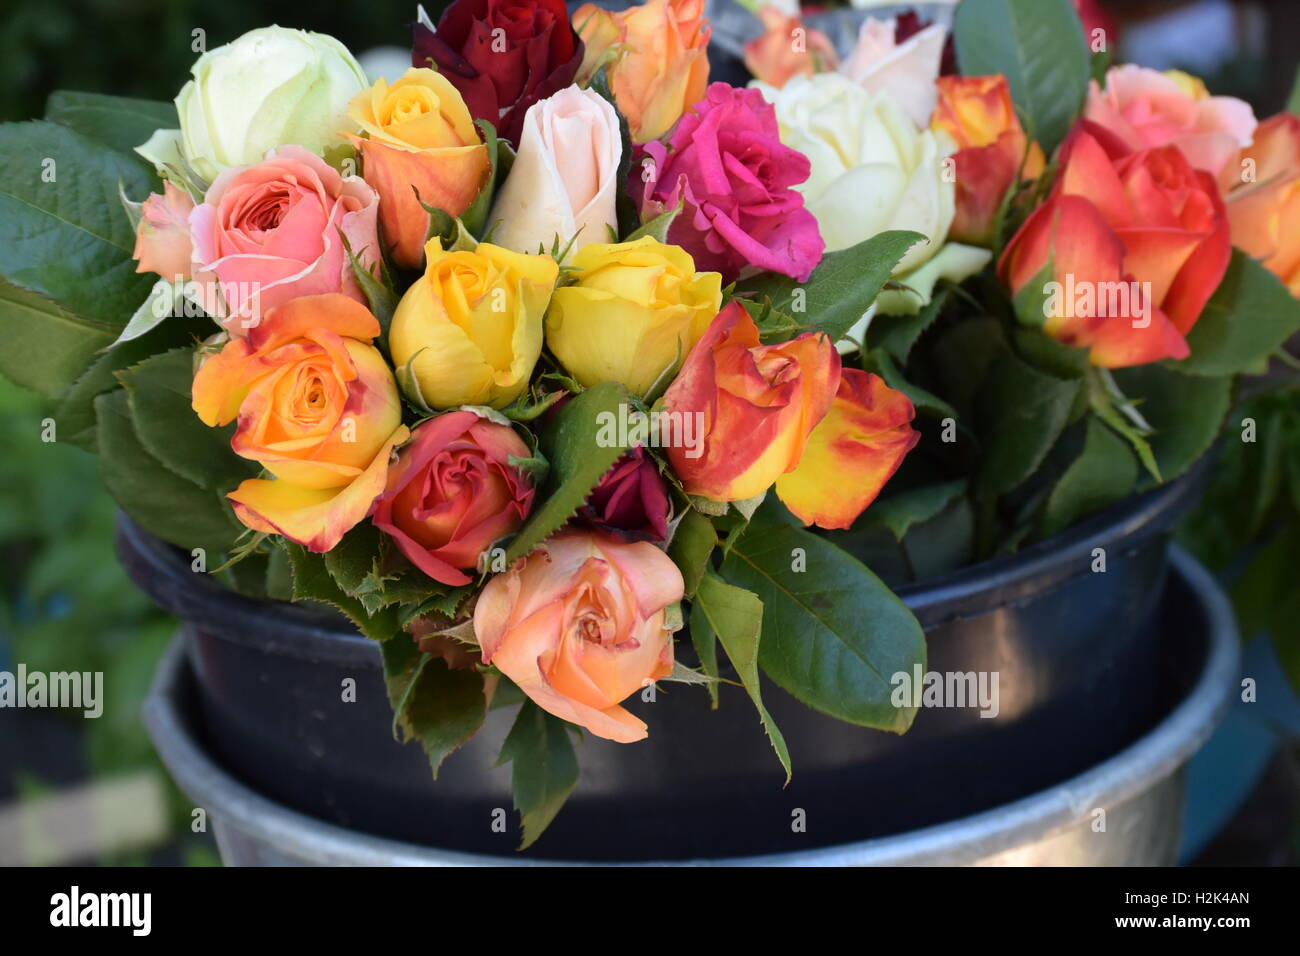 Un montón de rosas en una cuchara grande Foto de stock